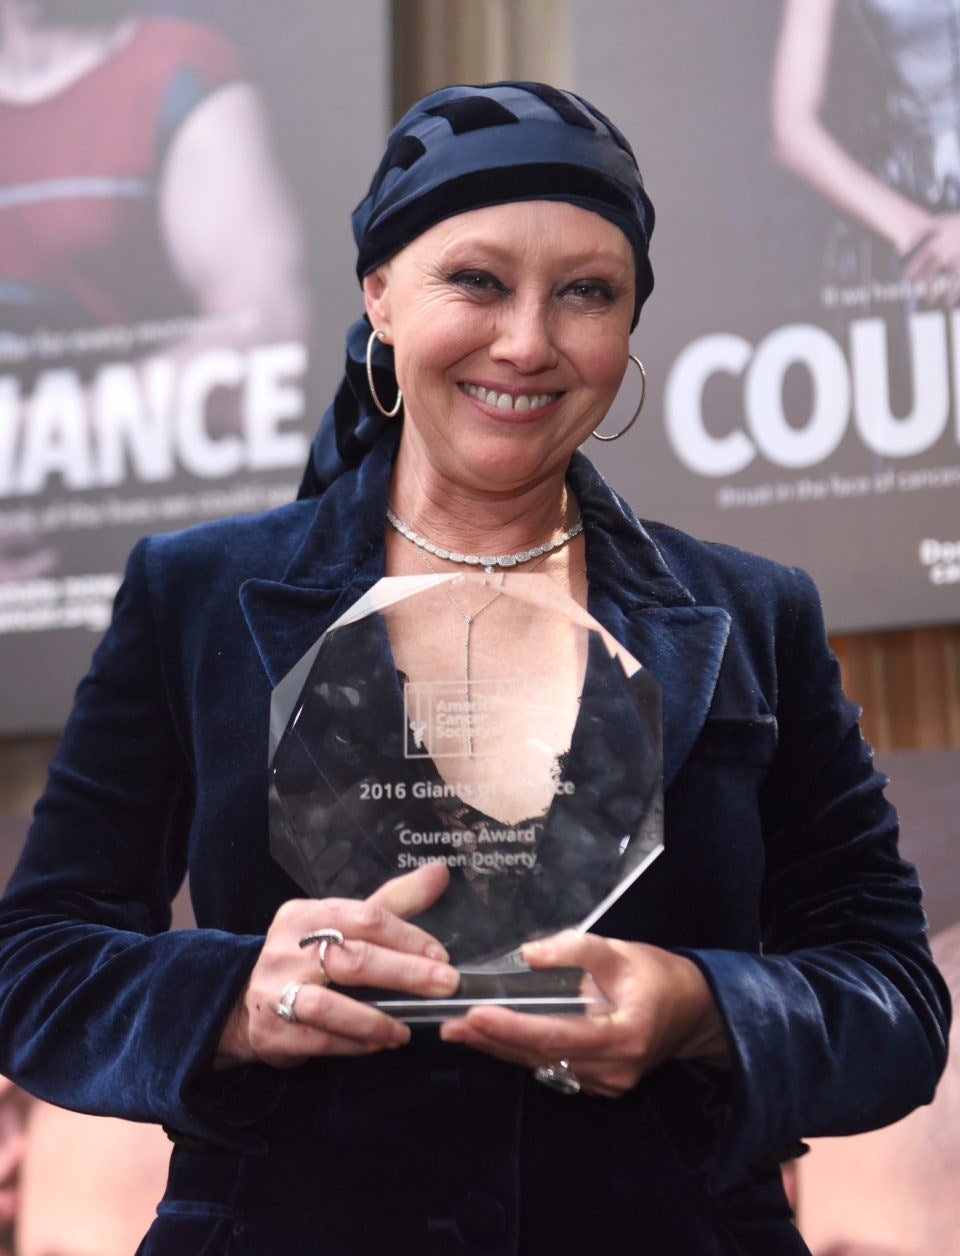 В 2016 году Шеннен Доэрти была удостоена специальной награды за смелось от Американского онкологического общества Courage.